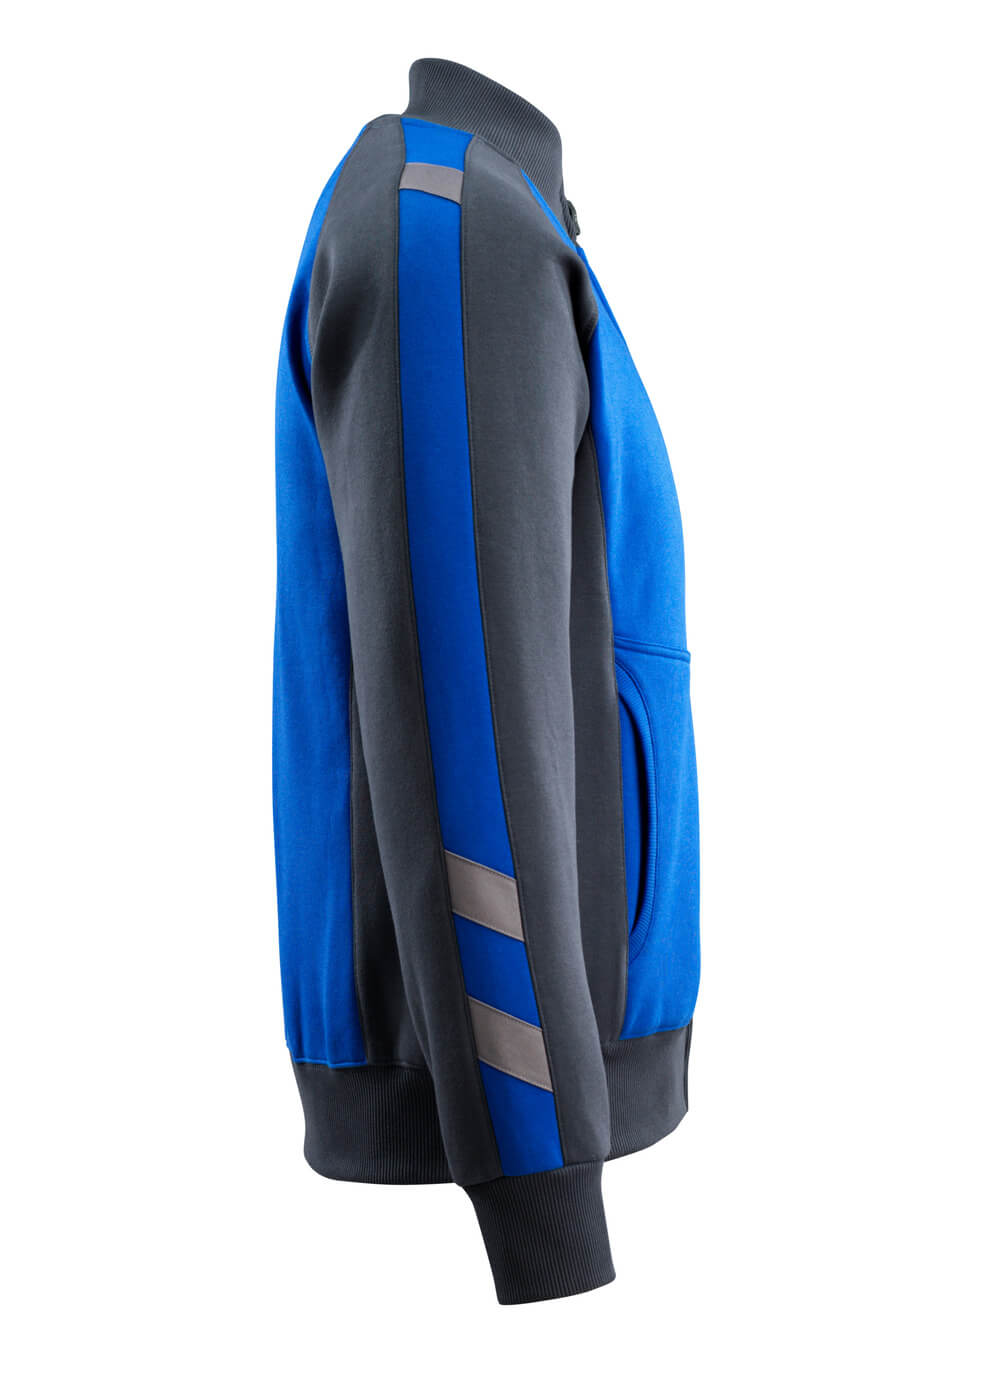 Sweatshirt mit Rei?verschluss UNIQUE Sweatshirt mit Rei?verschluss in Farbe Kornblau/Schwarzblau